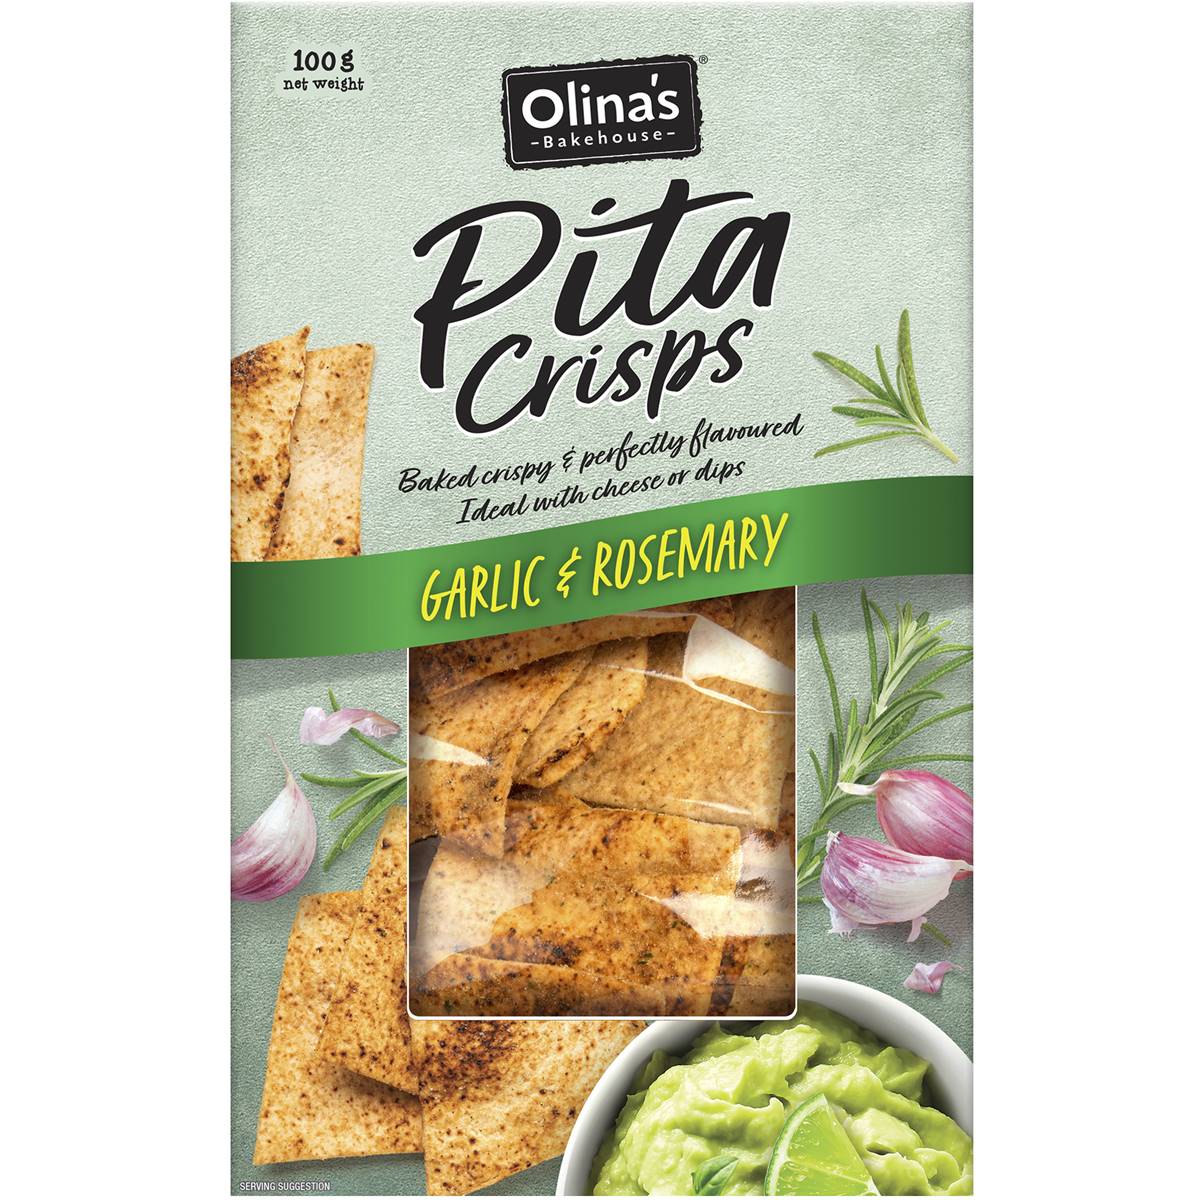 Olina's Garlic & Rosemary Pita Crisps 100g